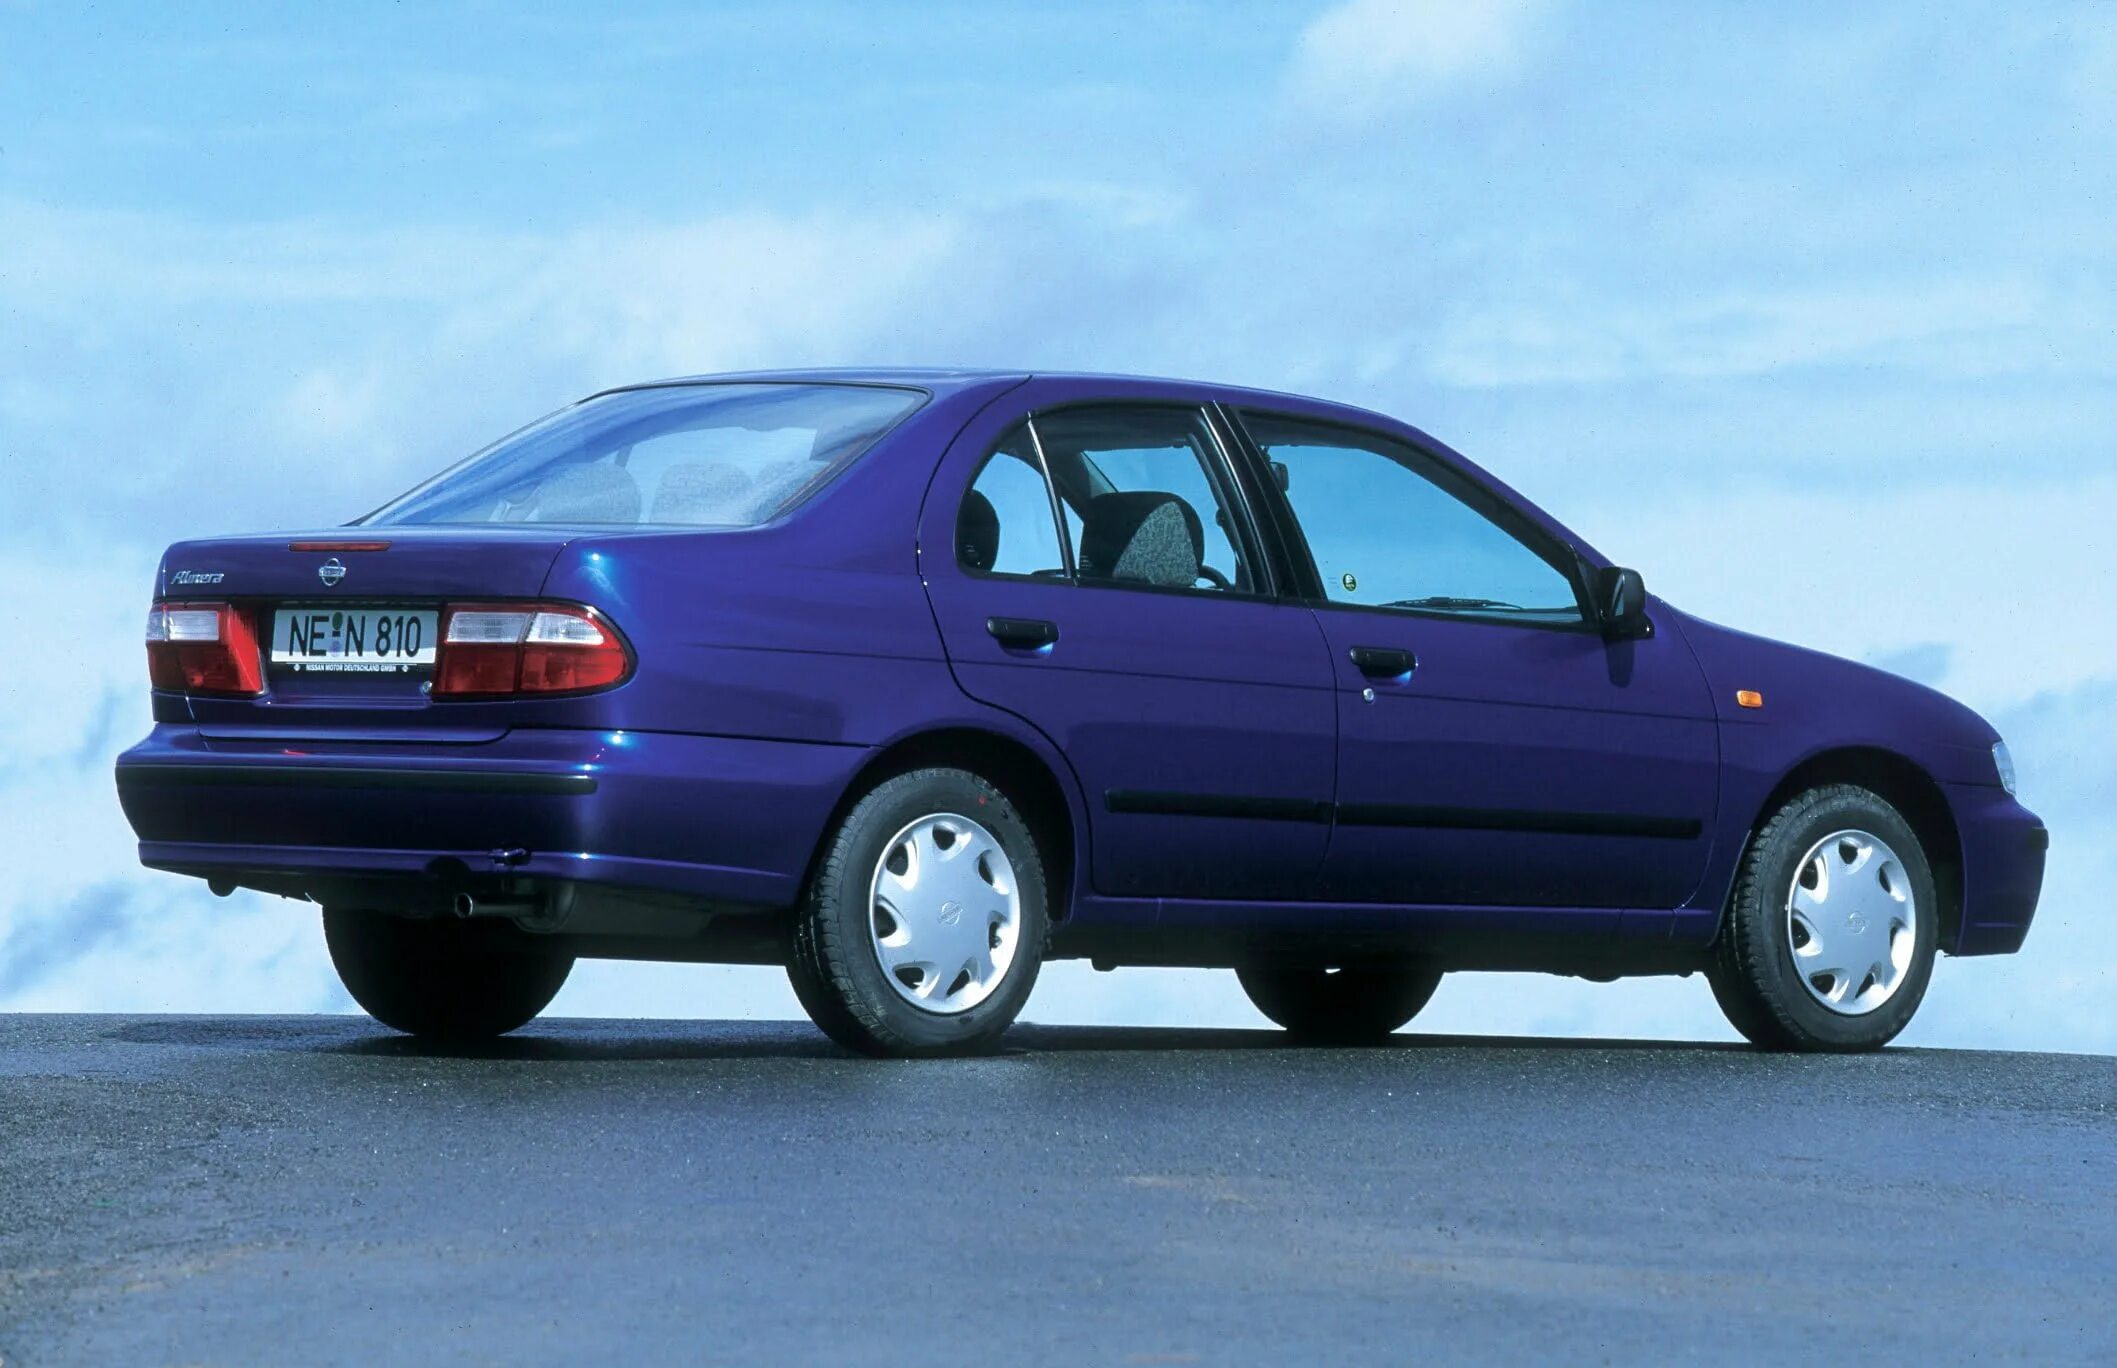 Ниссан первого поколения. Nissan Almera n15 1998. Nissan Almera n15 седан. Nissan Almera 1 поколение n15 (1995-2000). Ниссан Альмера н 15 1 поколение.